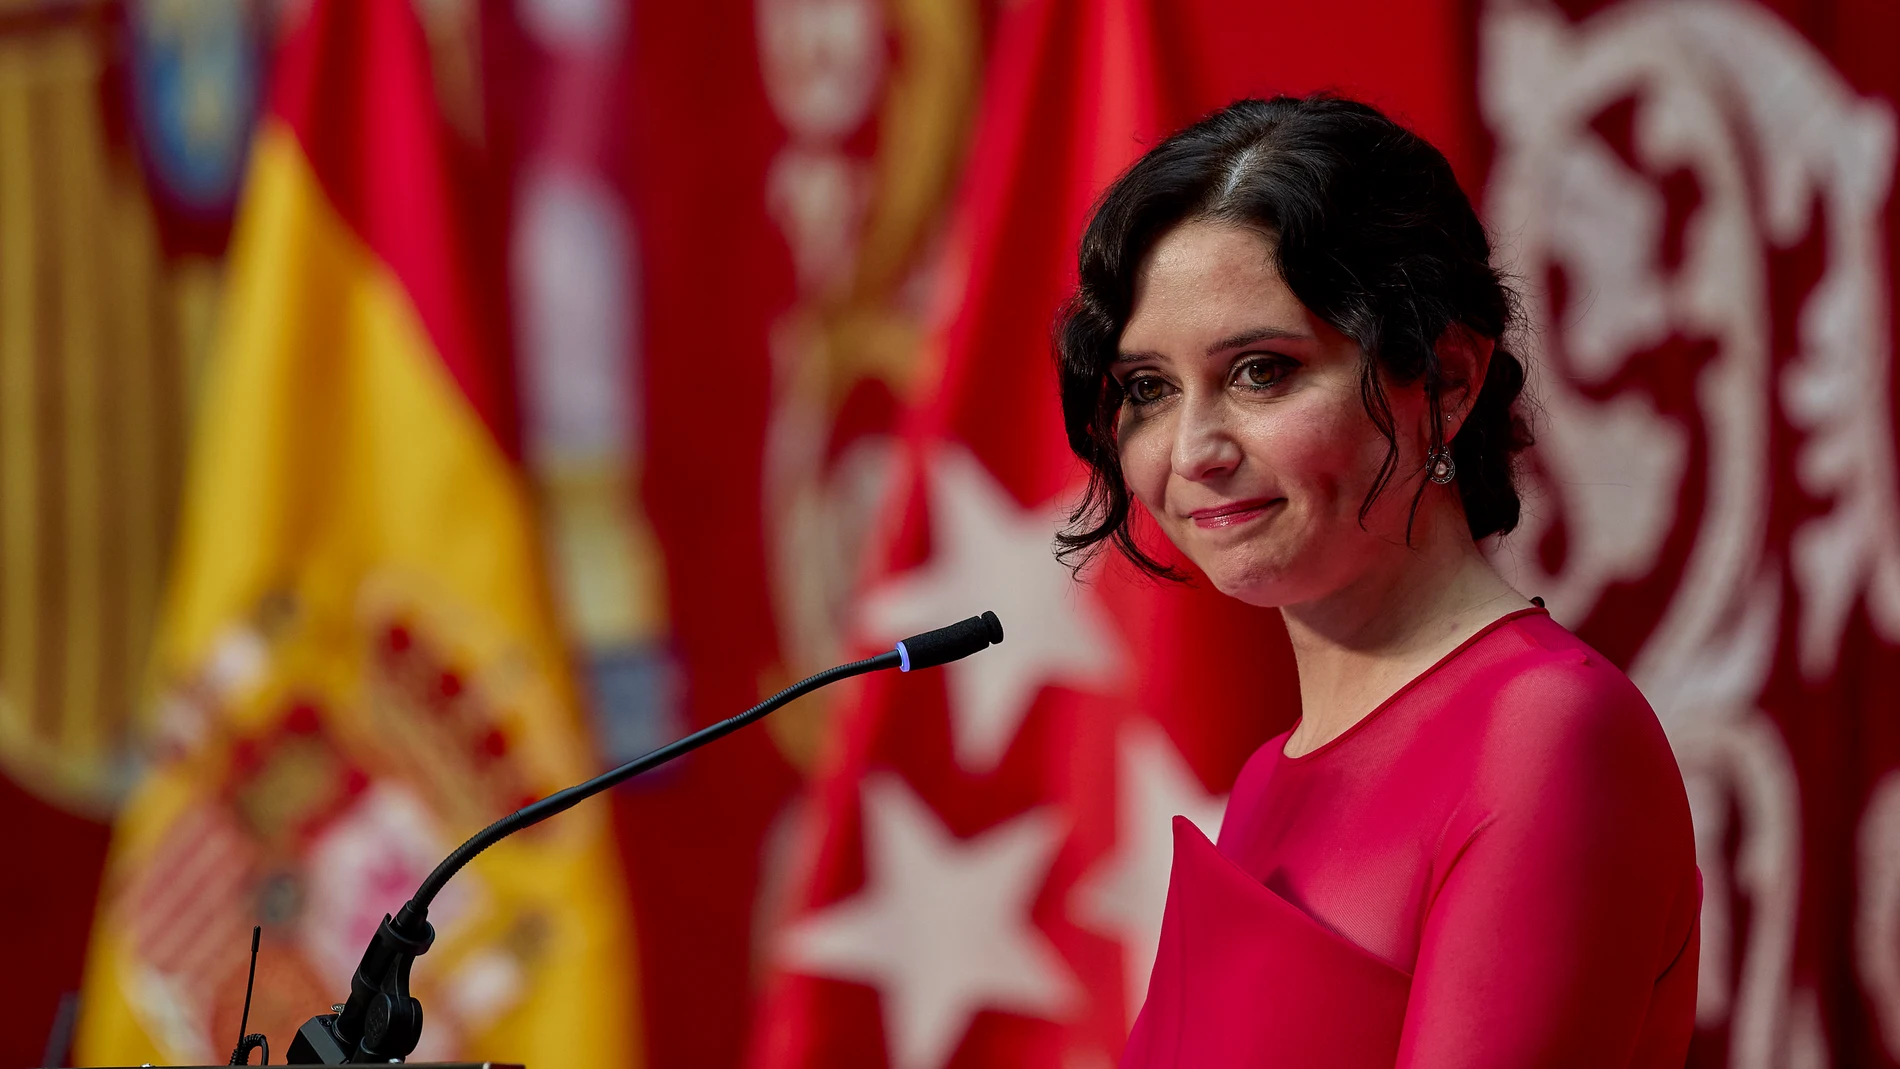 La presidenta de la Comunidad de Madrid, Isabel Díaz Ayuso, interviene en el acto de toma de posesión como presidenta de la Comunidad de Madrid